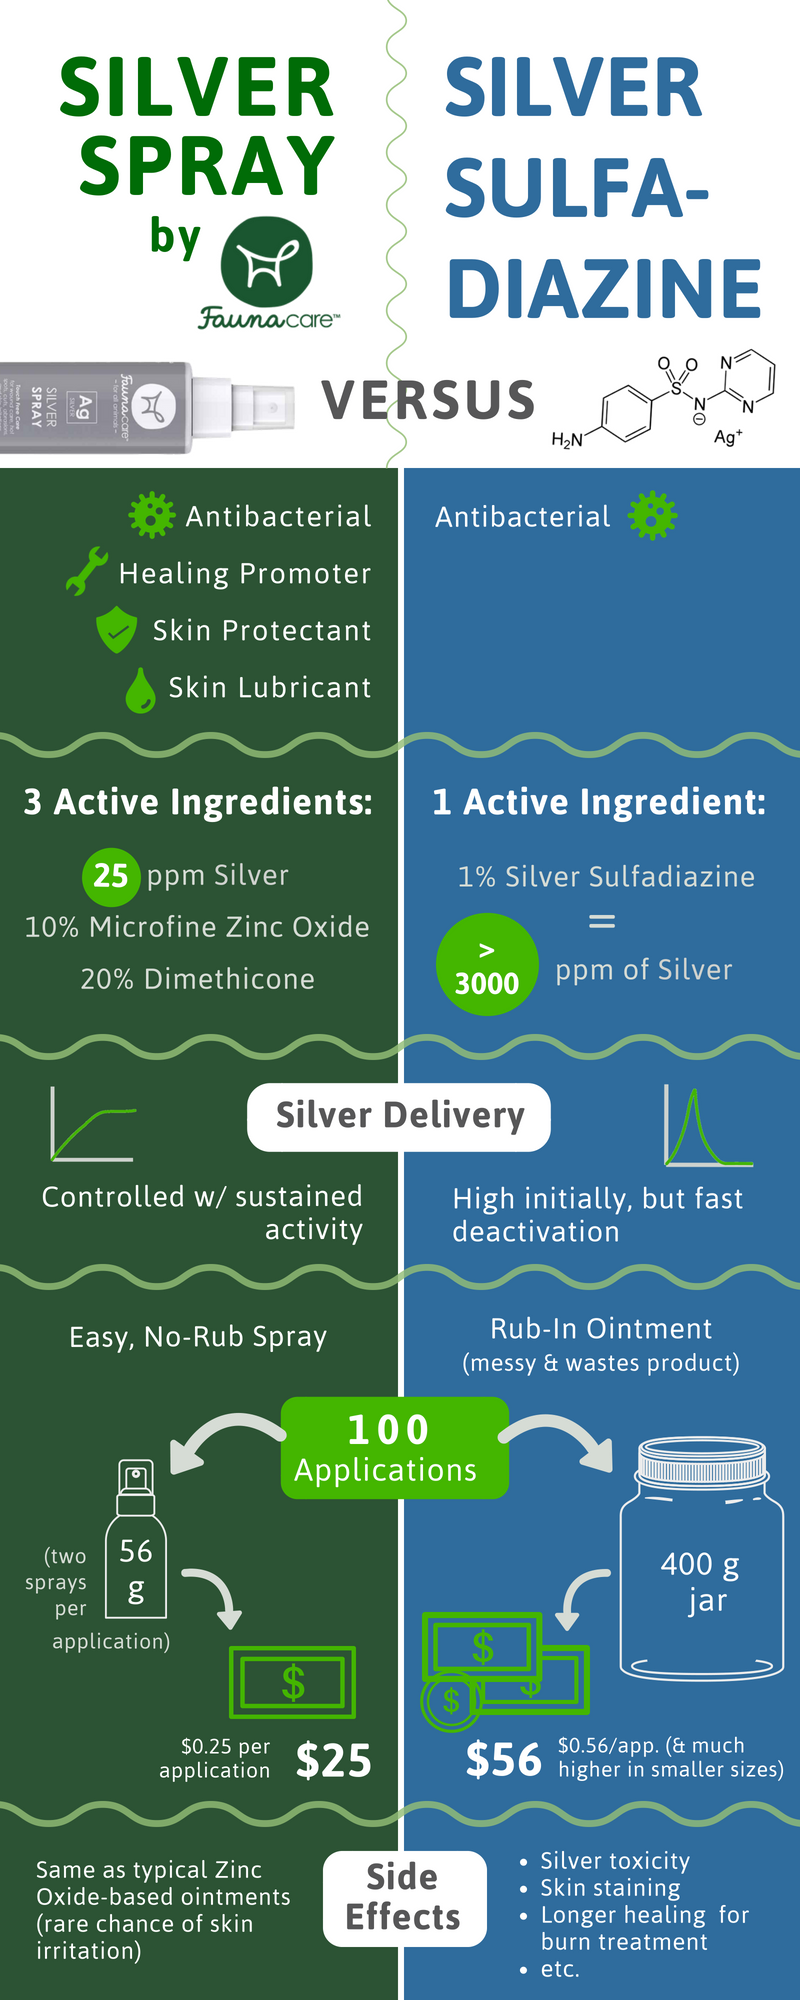 Por que você deve usar spray de prata em vez de sulfadiazina de prata